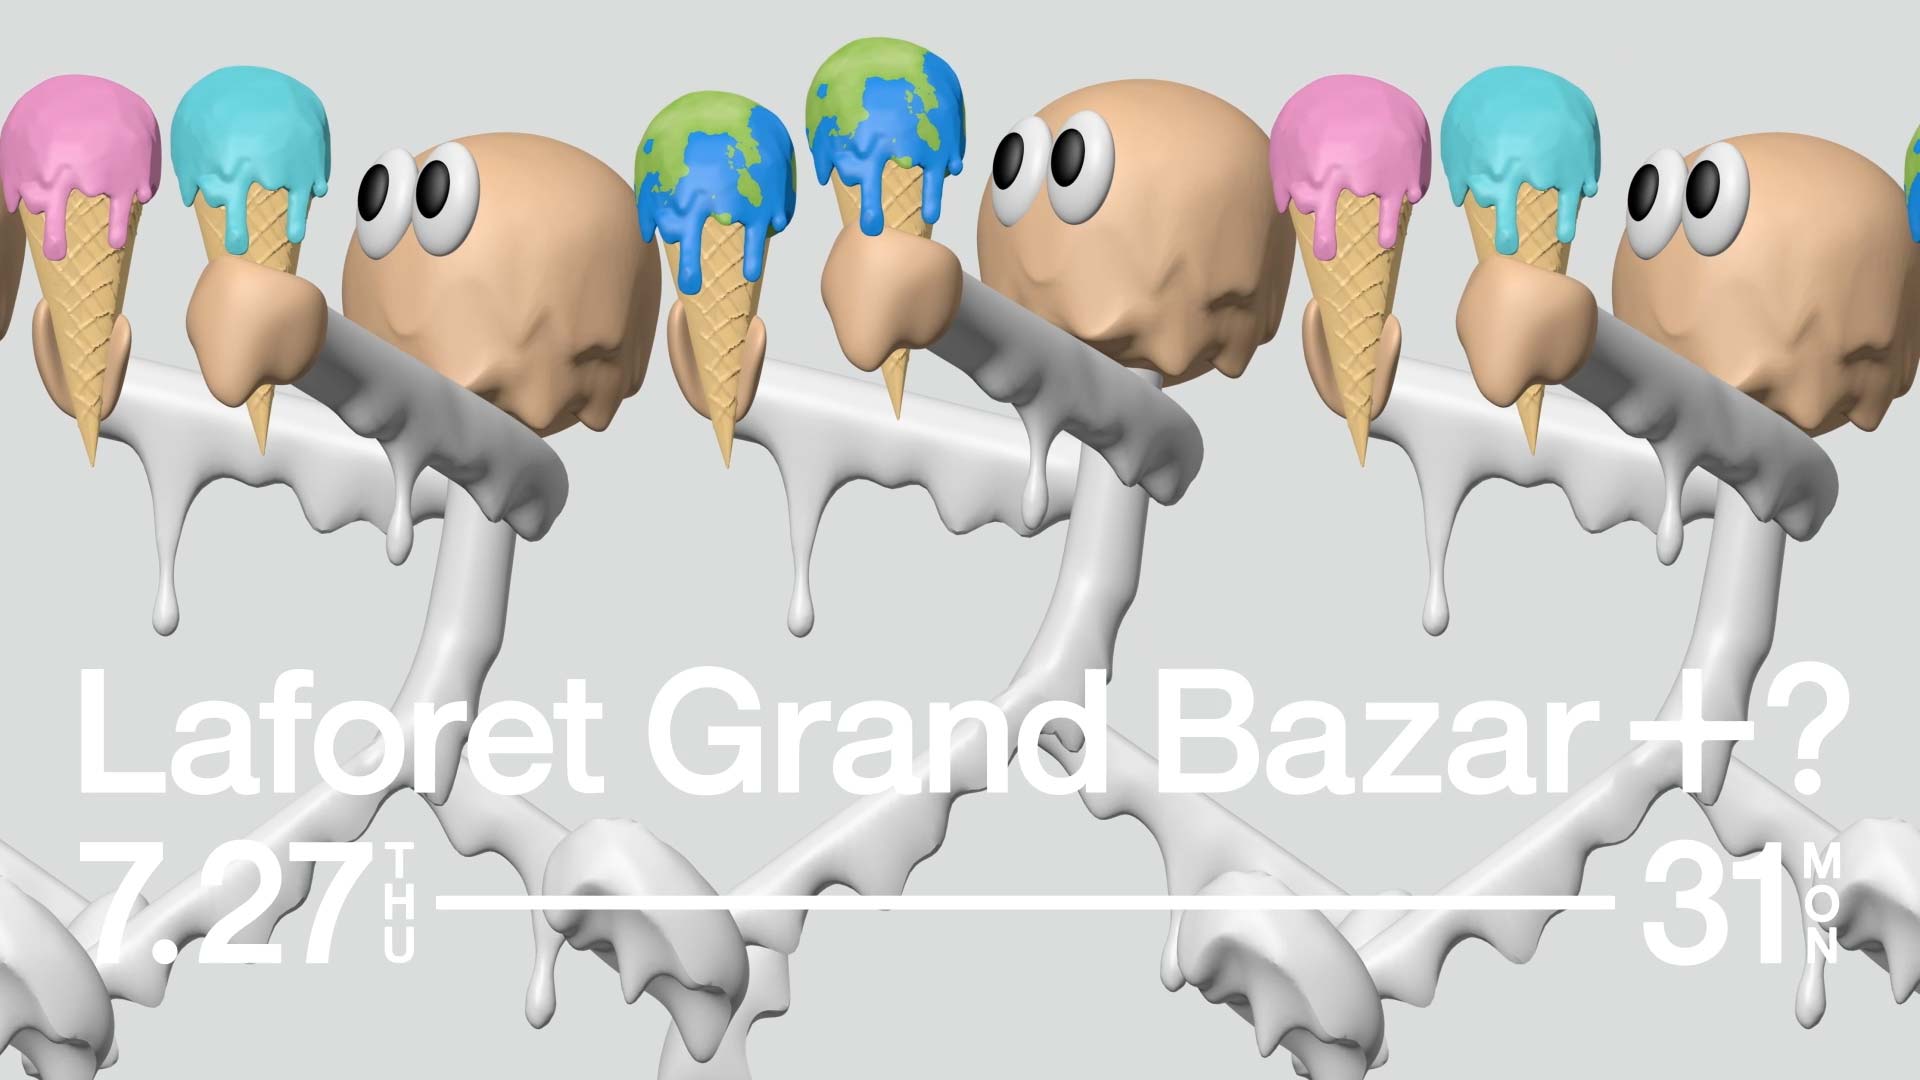 ラフォーレ原宿「LAFORET GRAND BAZAR + ラフォーレ市場」